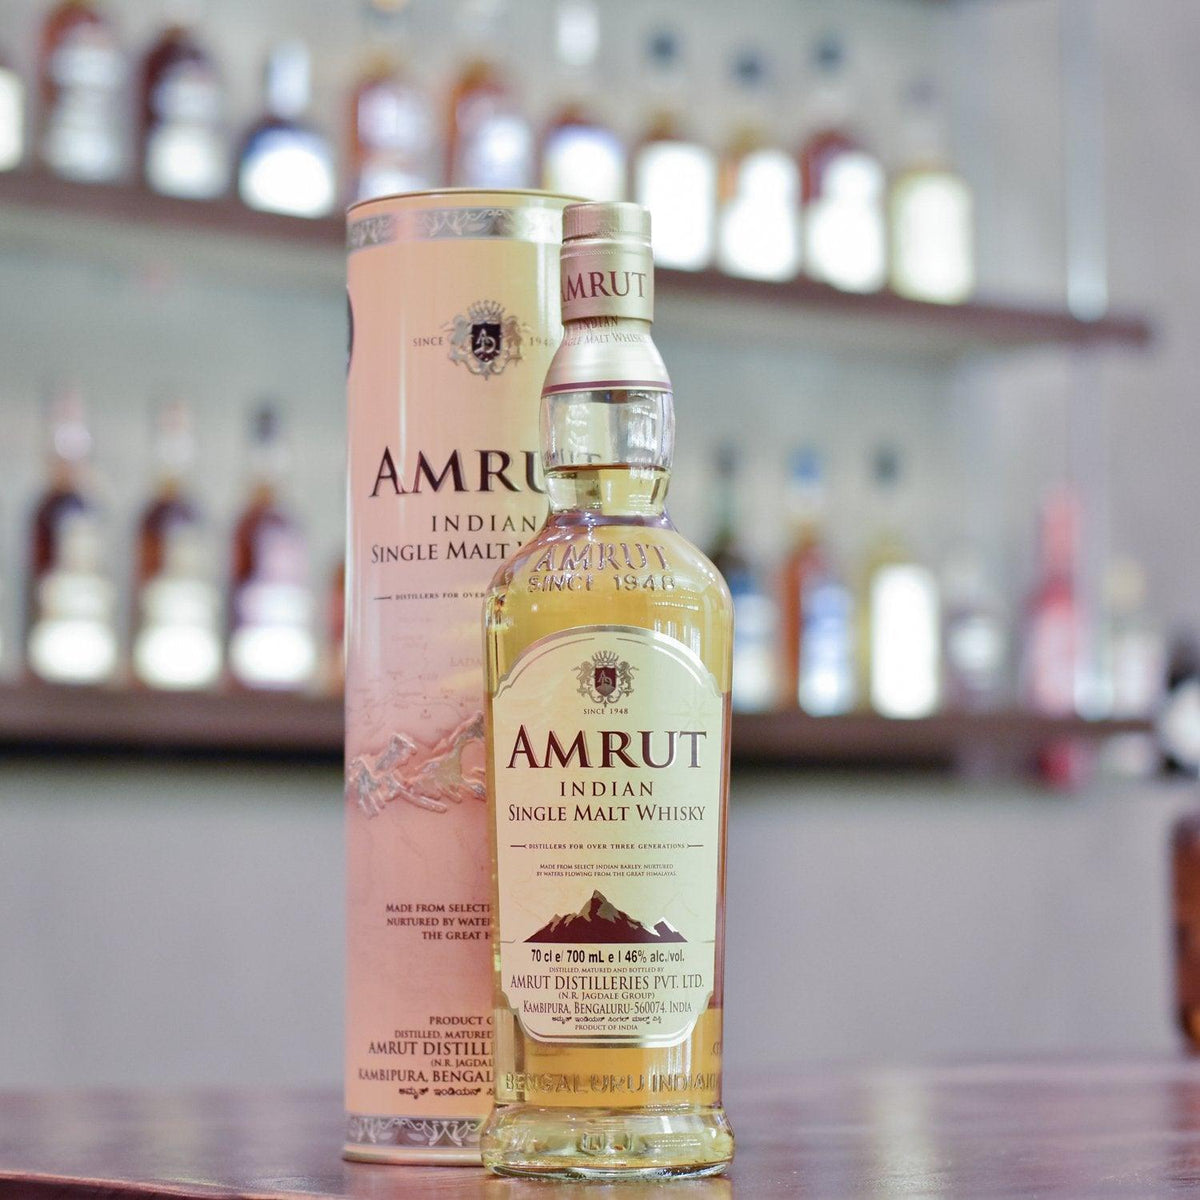 Amrut Single Malt Whisky - The Rare Malt